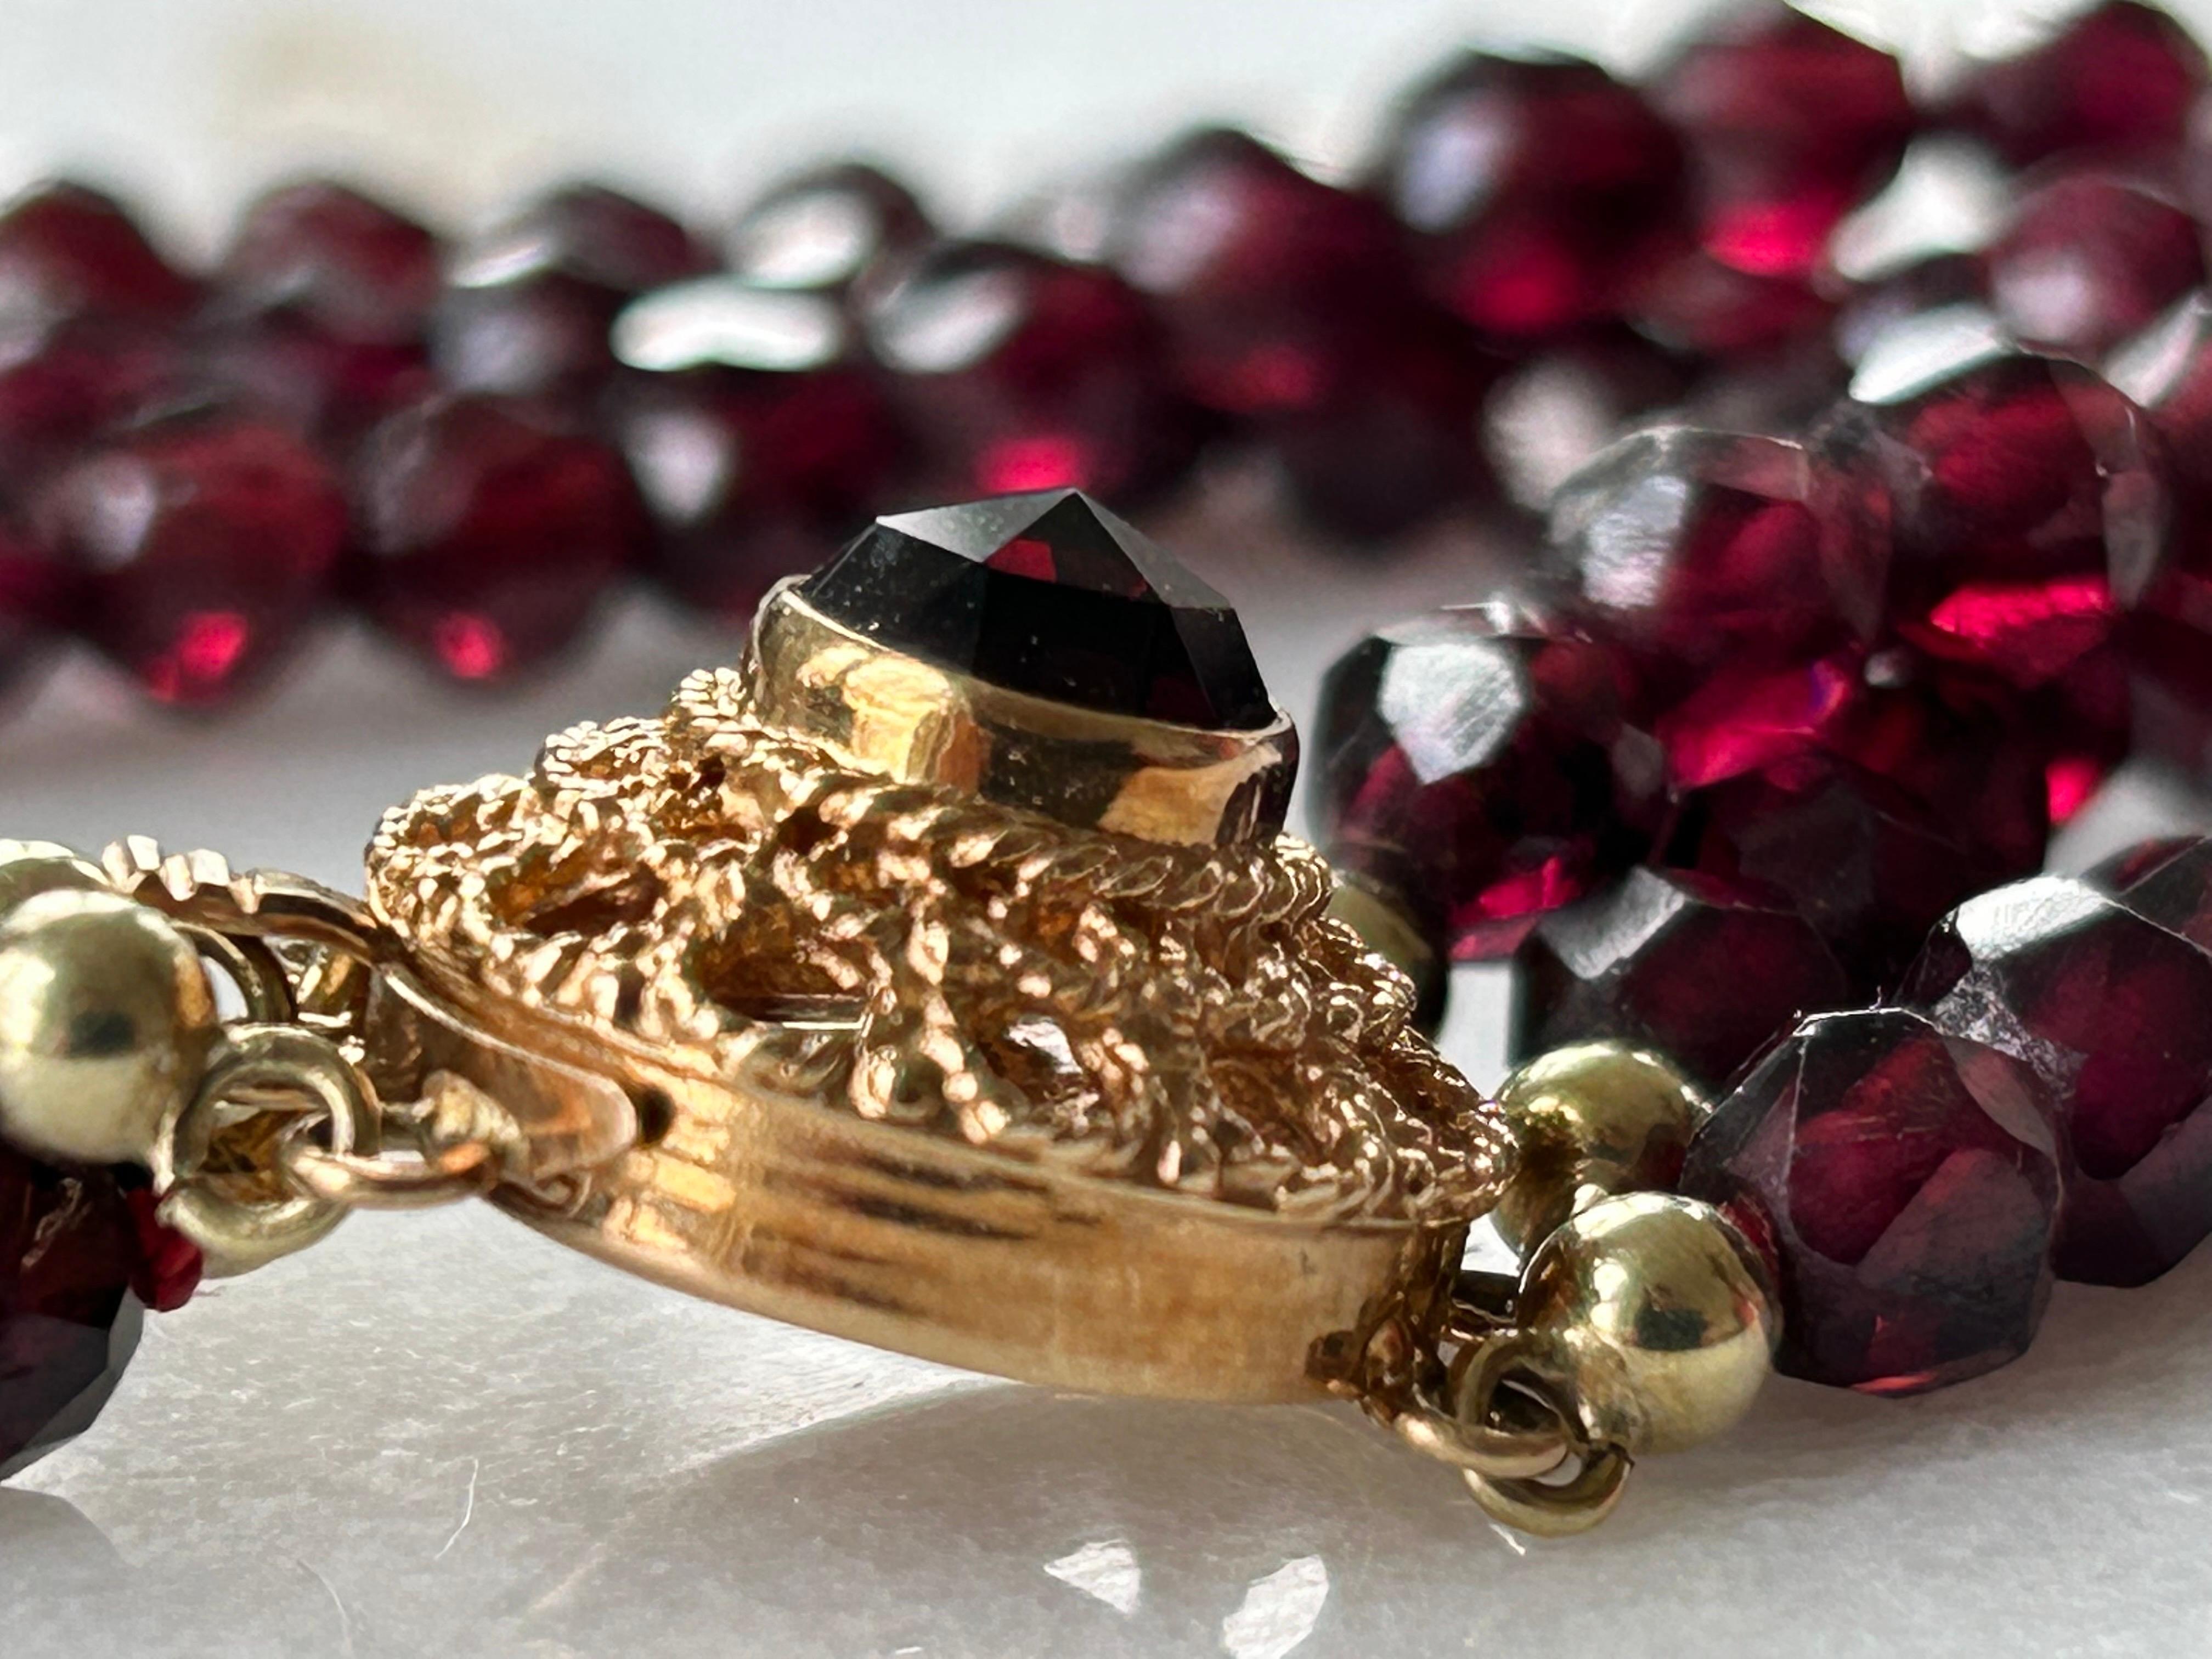 Vintage viktorianischen Stil drei Strang Rose, geschliffen Granat Armband Gold-Verschluss. Punzierung: 585 oder 15 Karat Gold. Mit einem Granat im Rosenschliff (ca. 6,5 mm) besetzt. In ausgezeichnetem Zustand. Armband auf dem ungefähr 18. 5 mm oder